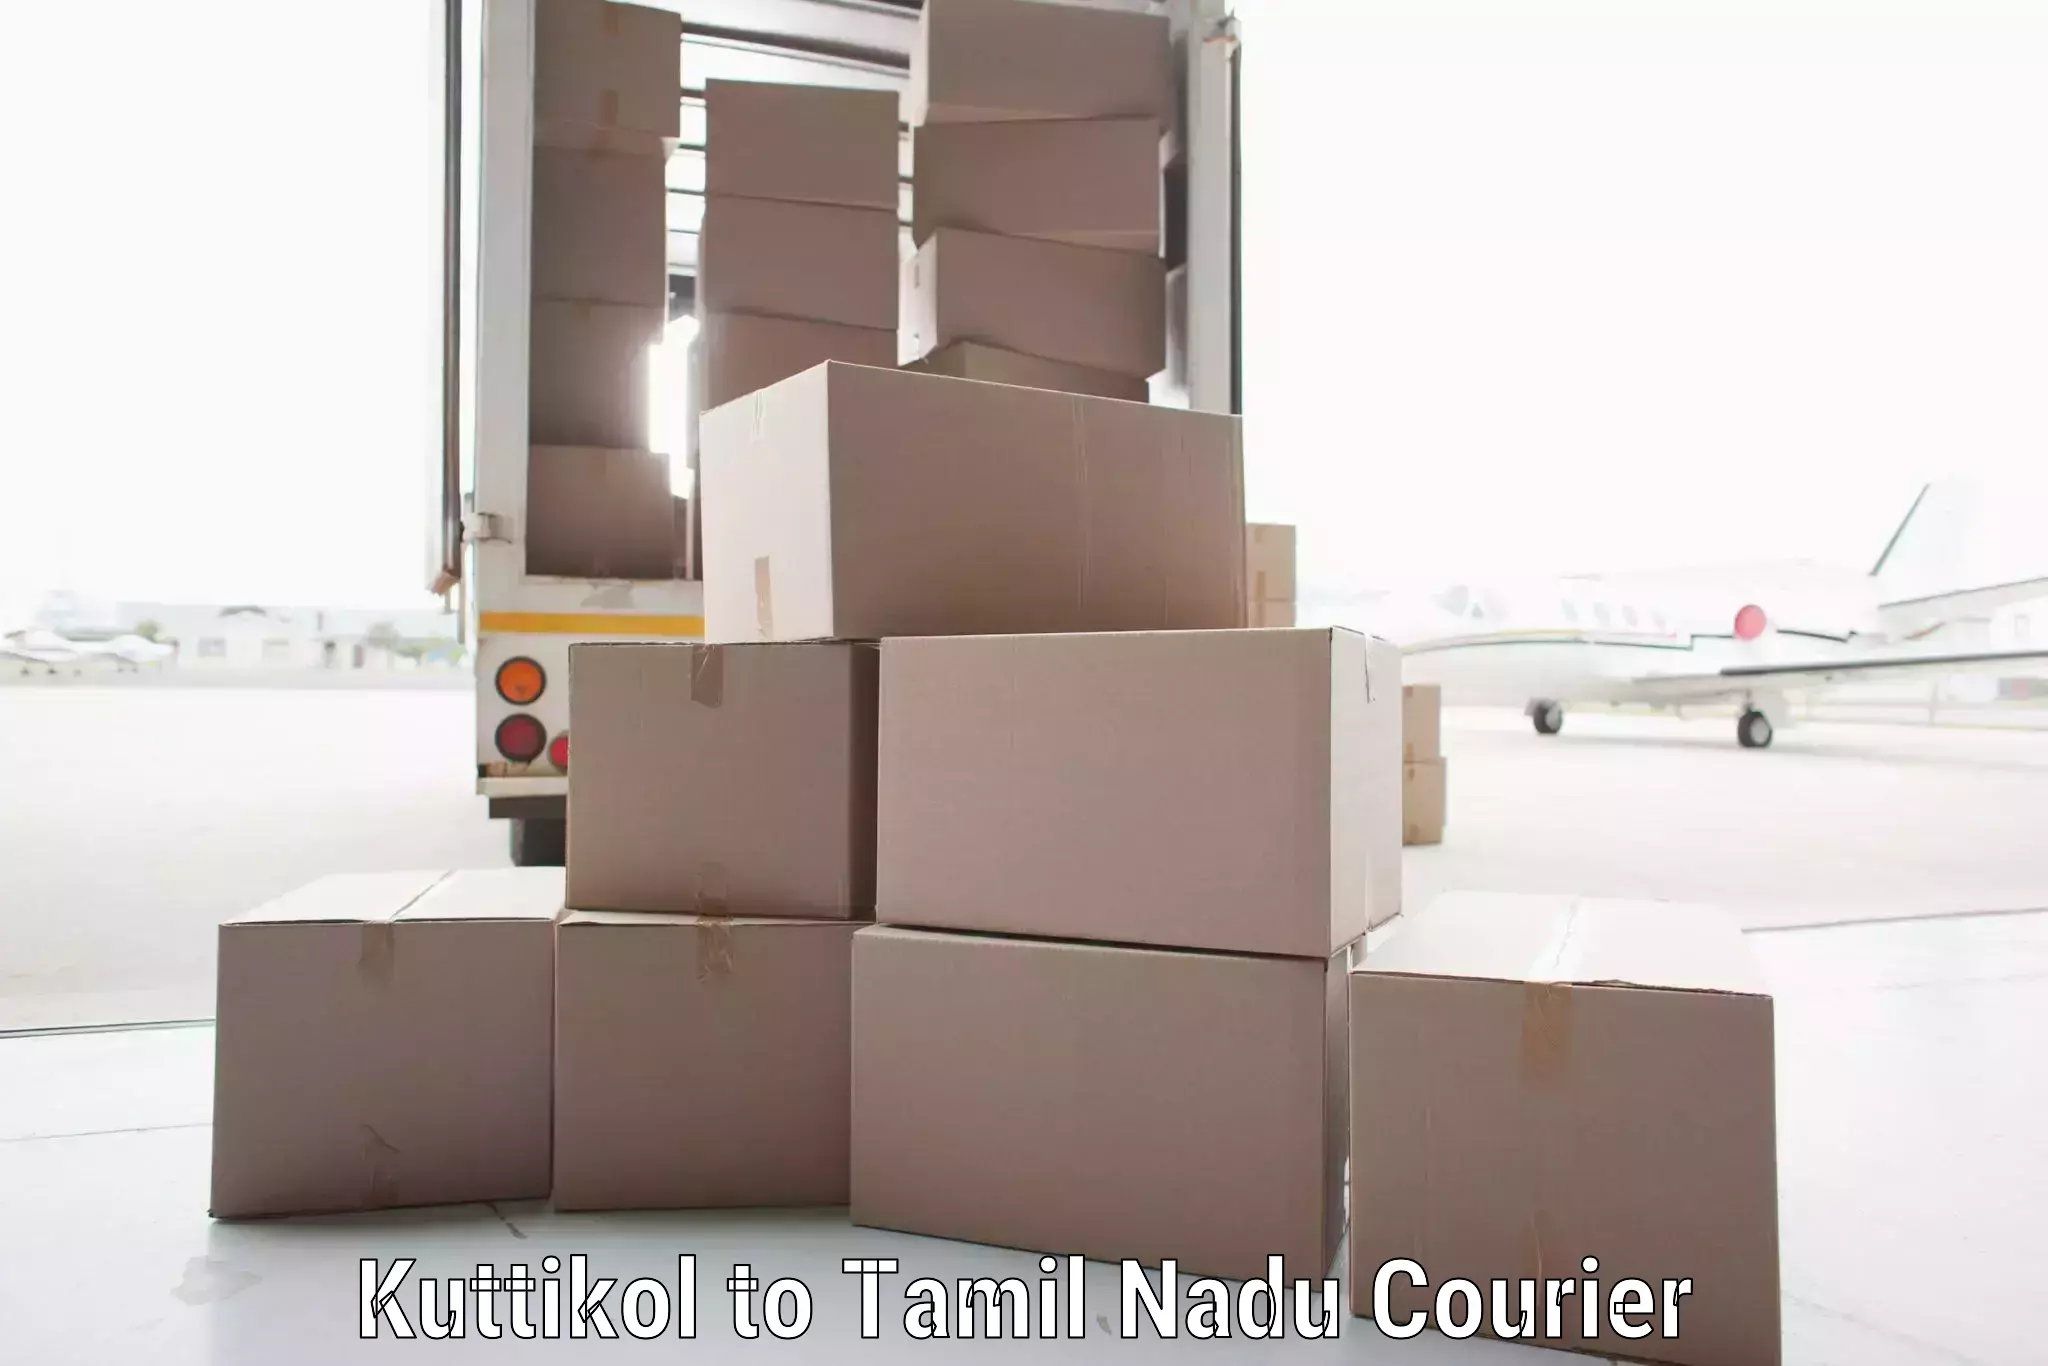 Customer-friendly courier services Kuttikol to Tiruchi